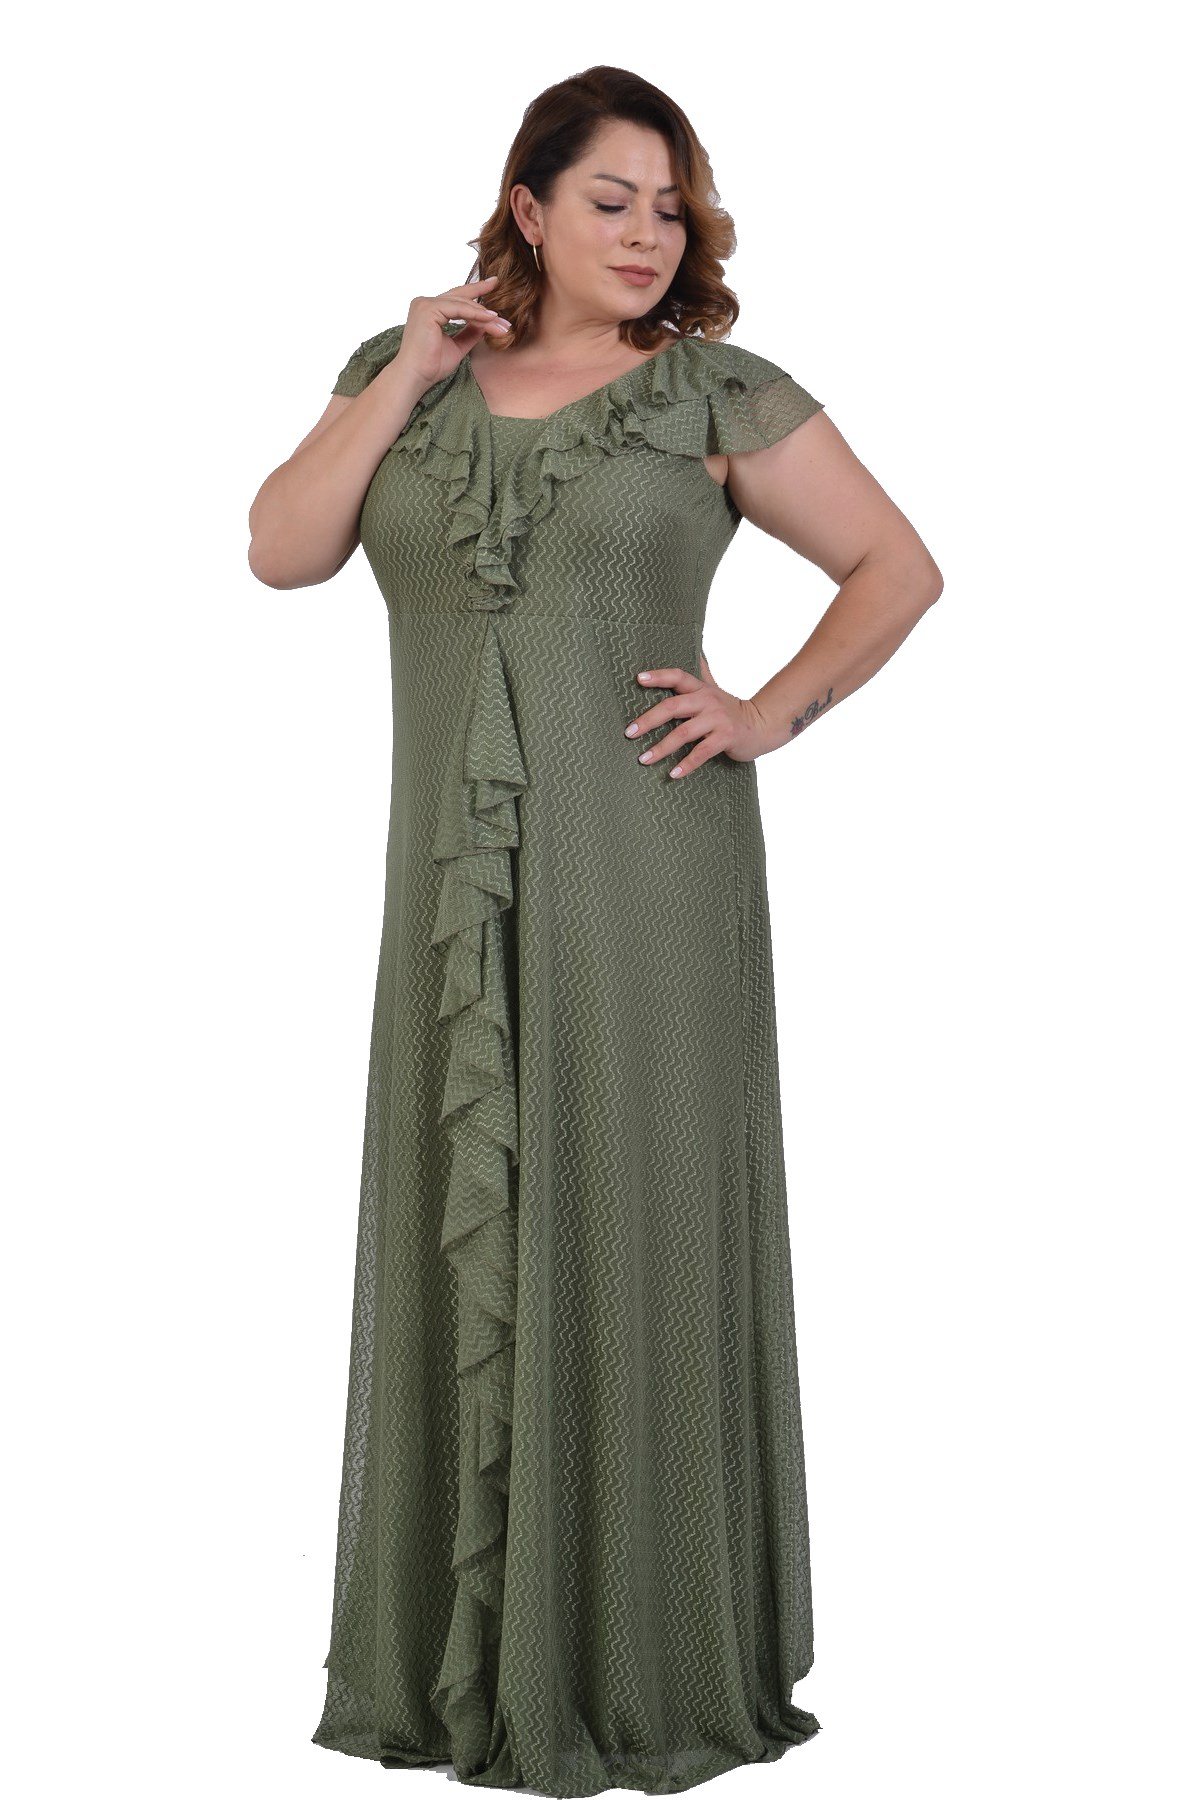 Büyük Beden Yeşil Renkli Petek Tül Fırfırlı Elbise - LilasXXL